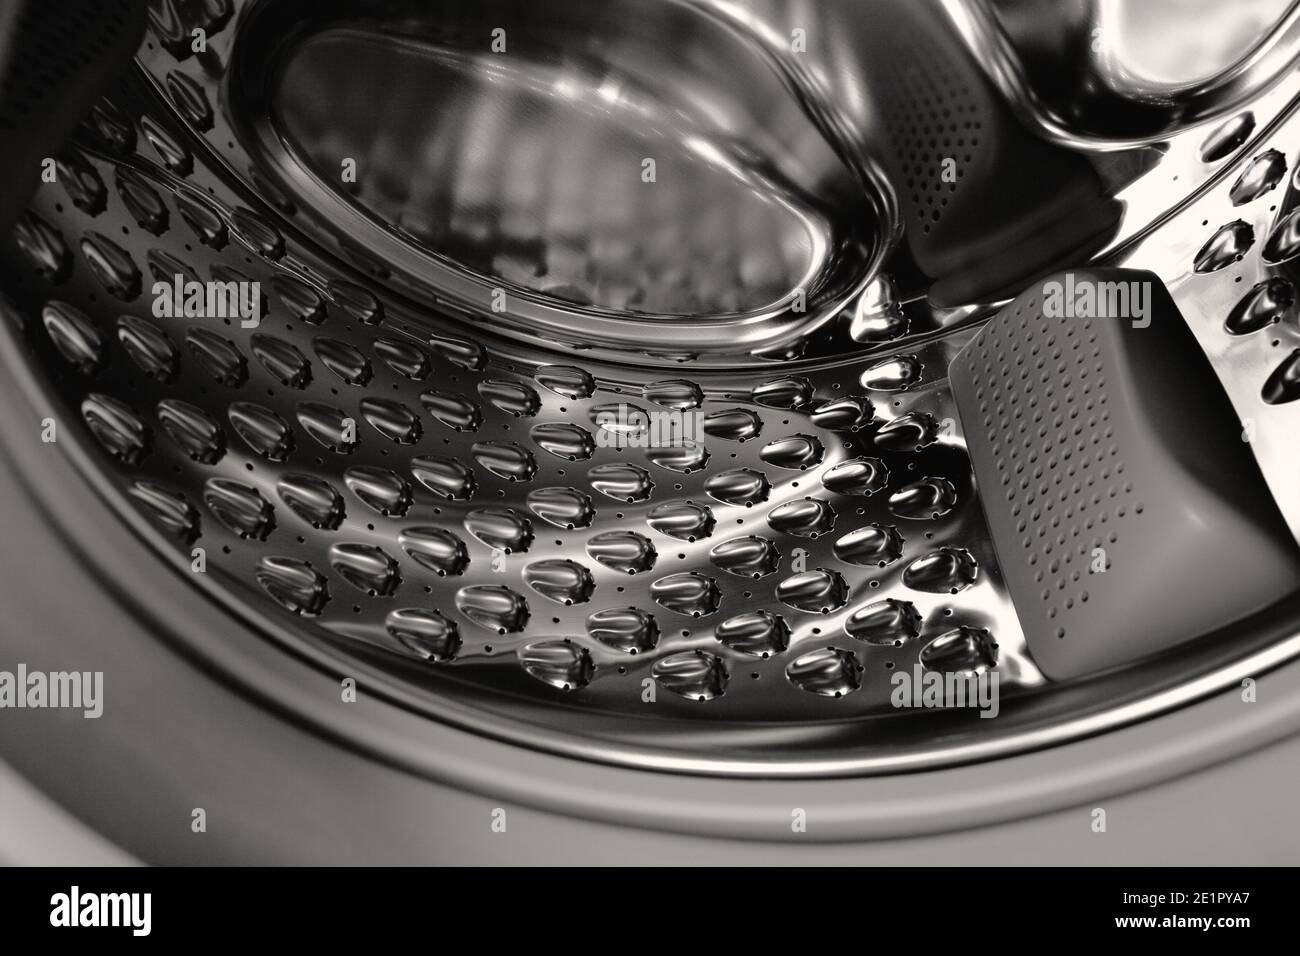 Inside of the washing machine drum. Stock Photo